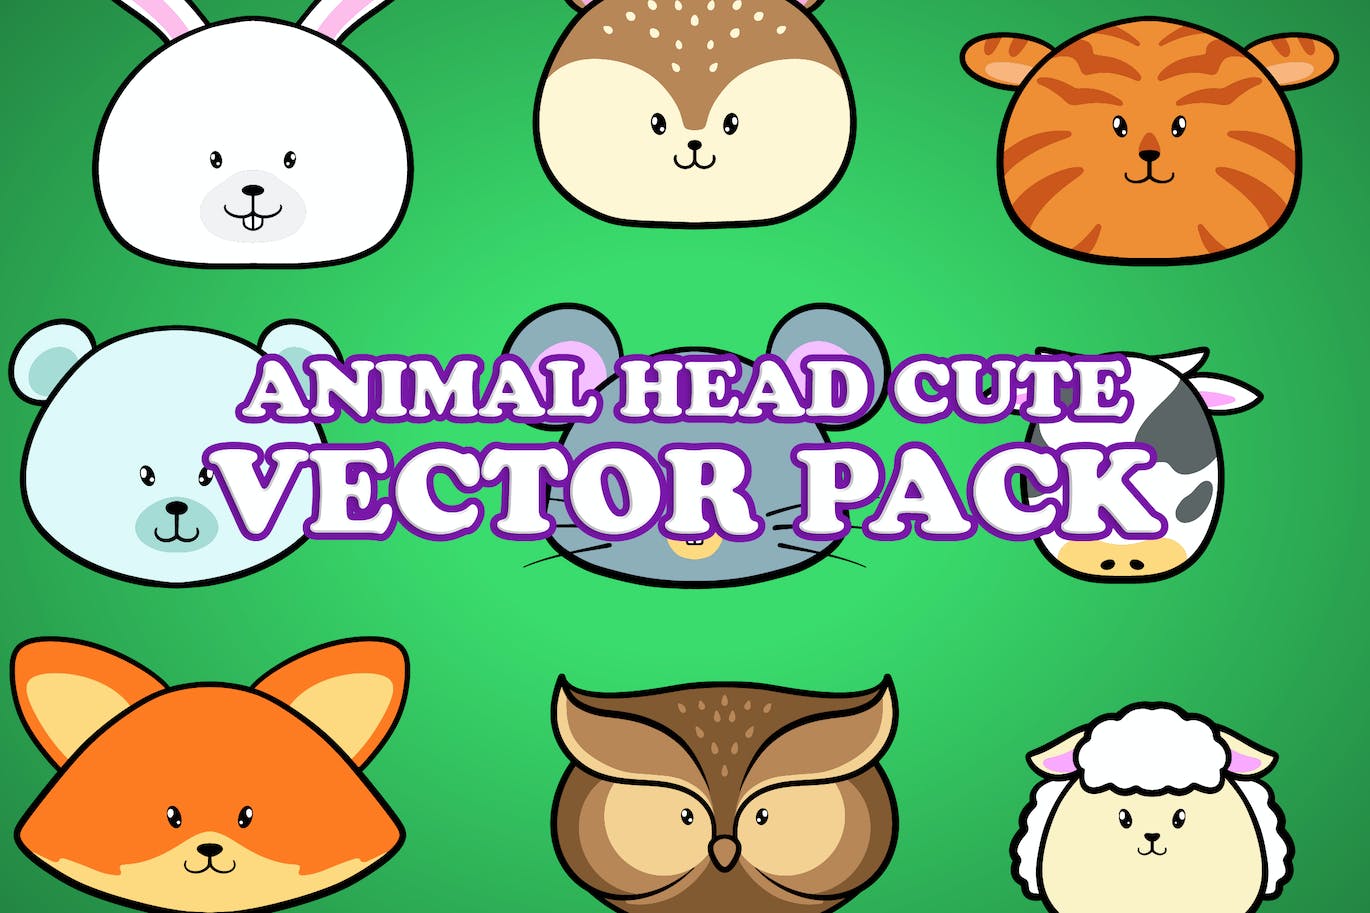 可爱的动物头像插画矢量包 Cute Animal Head Illustration Vector Pack 设计素材 第1张